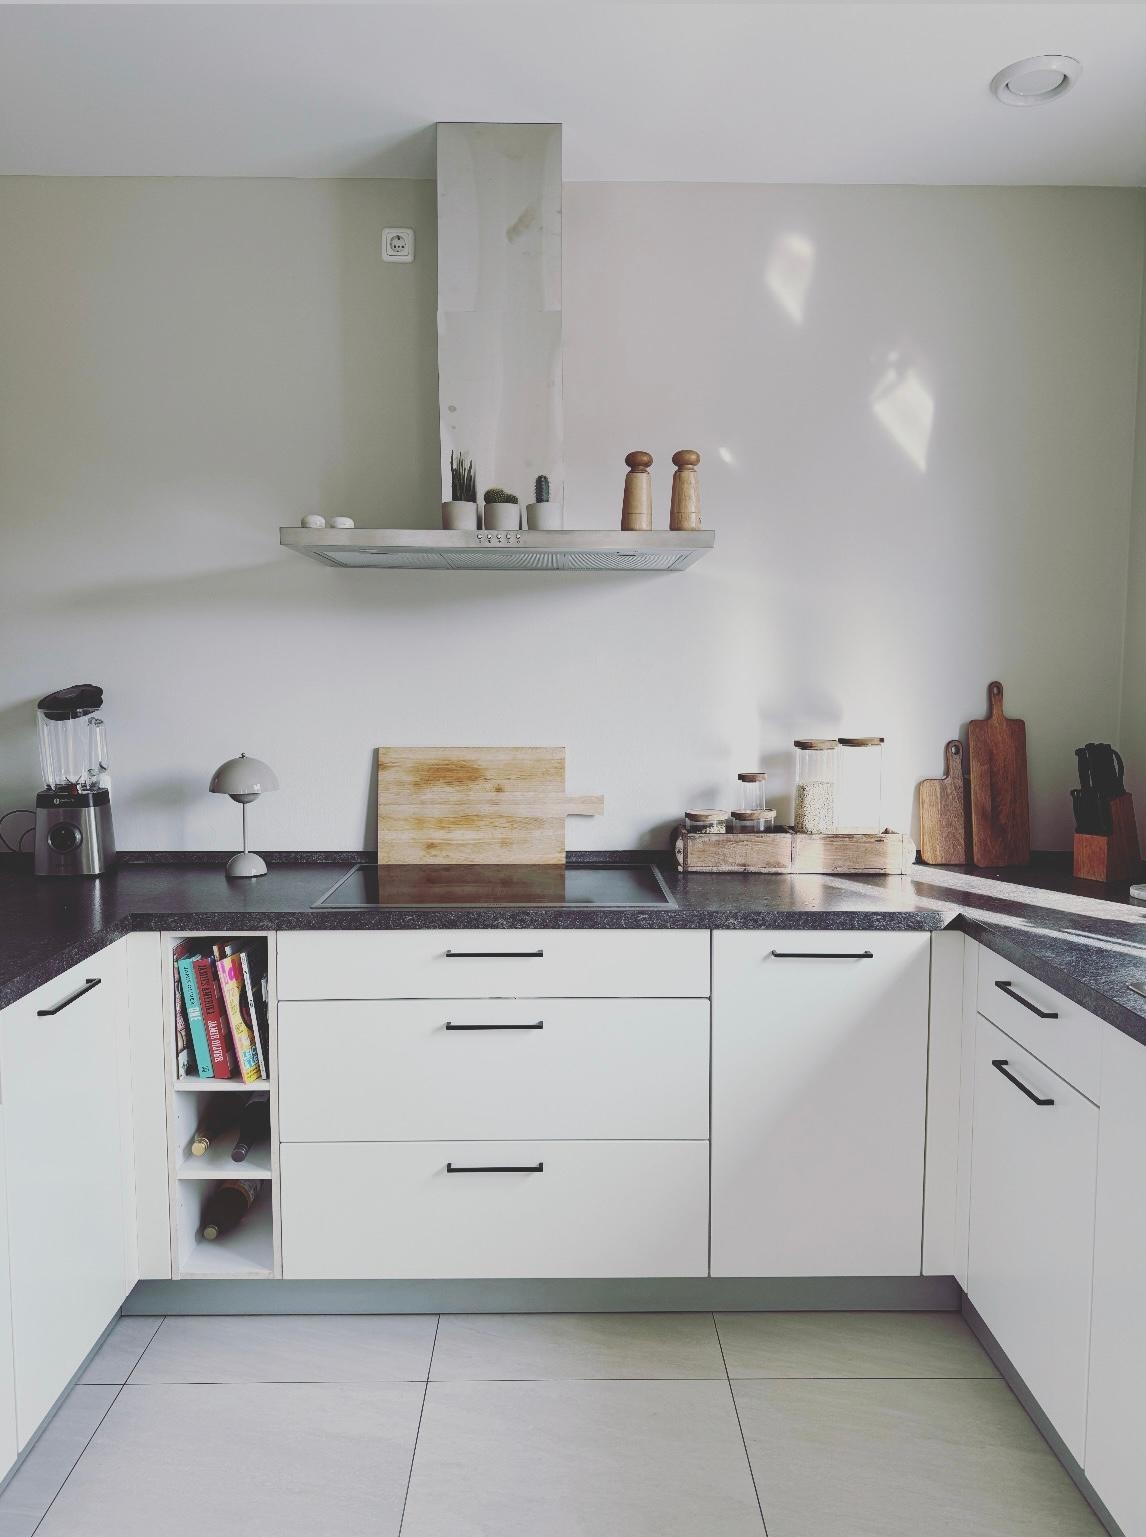 #küche im #mietshaus
#minimalistisch #holzaccessoires